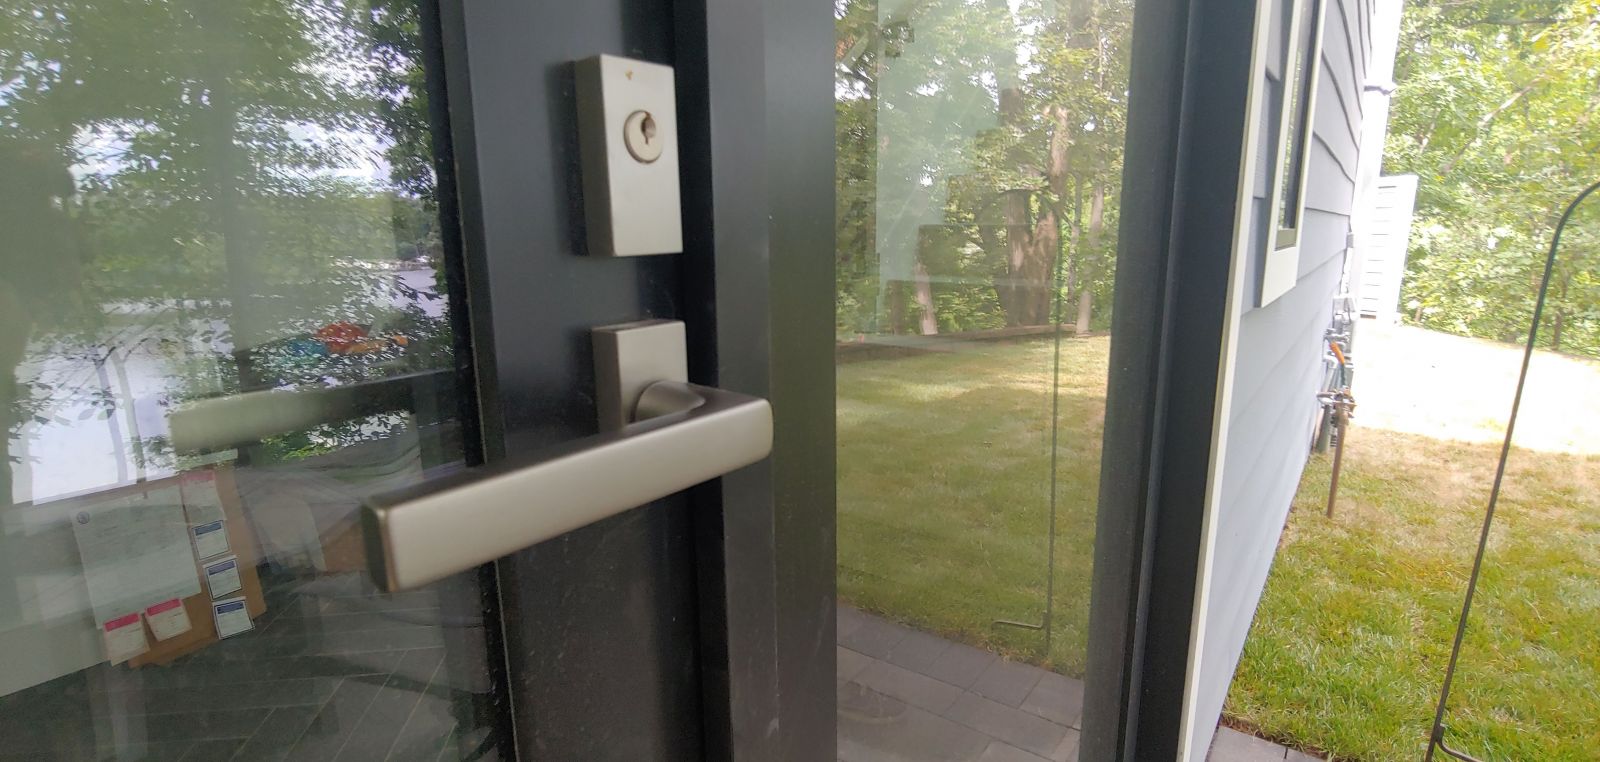 sleek bronze door handle on modern exterior door